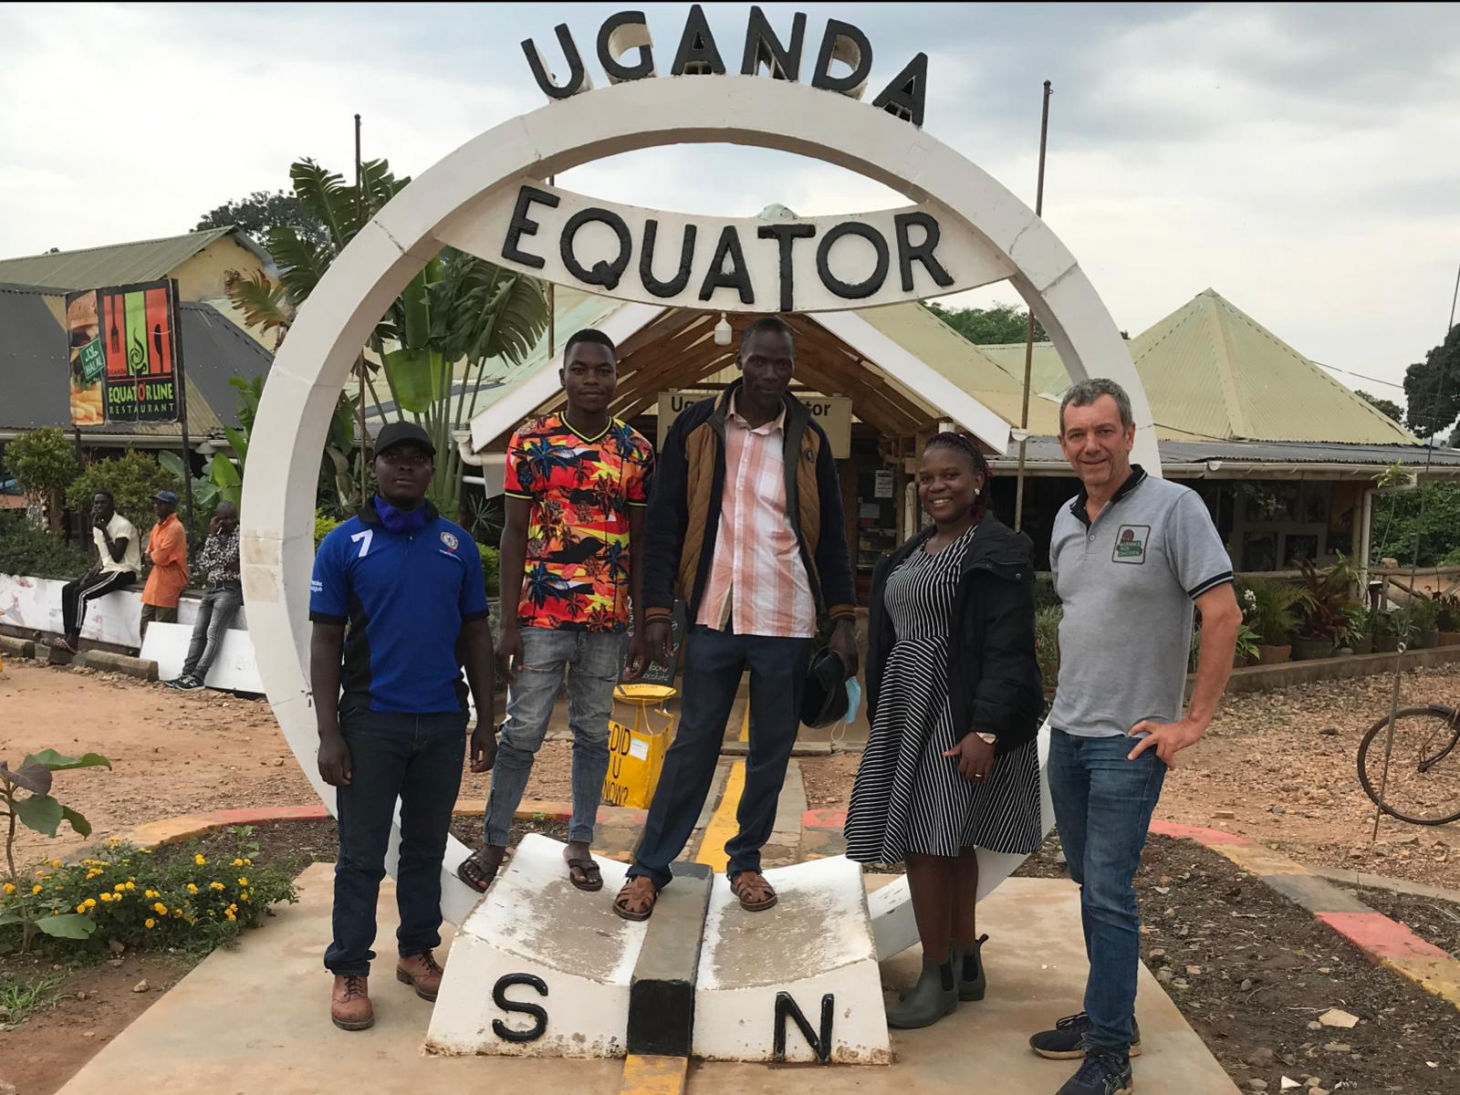 Heute ging es ab in den Süden. Uganda liegt ja direkt am Äquator, trotzdem waren bis vor kurzem alle unsere Standorte noch auf der nördlichen Hemisphäre.